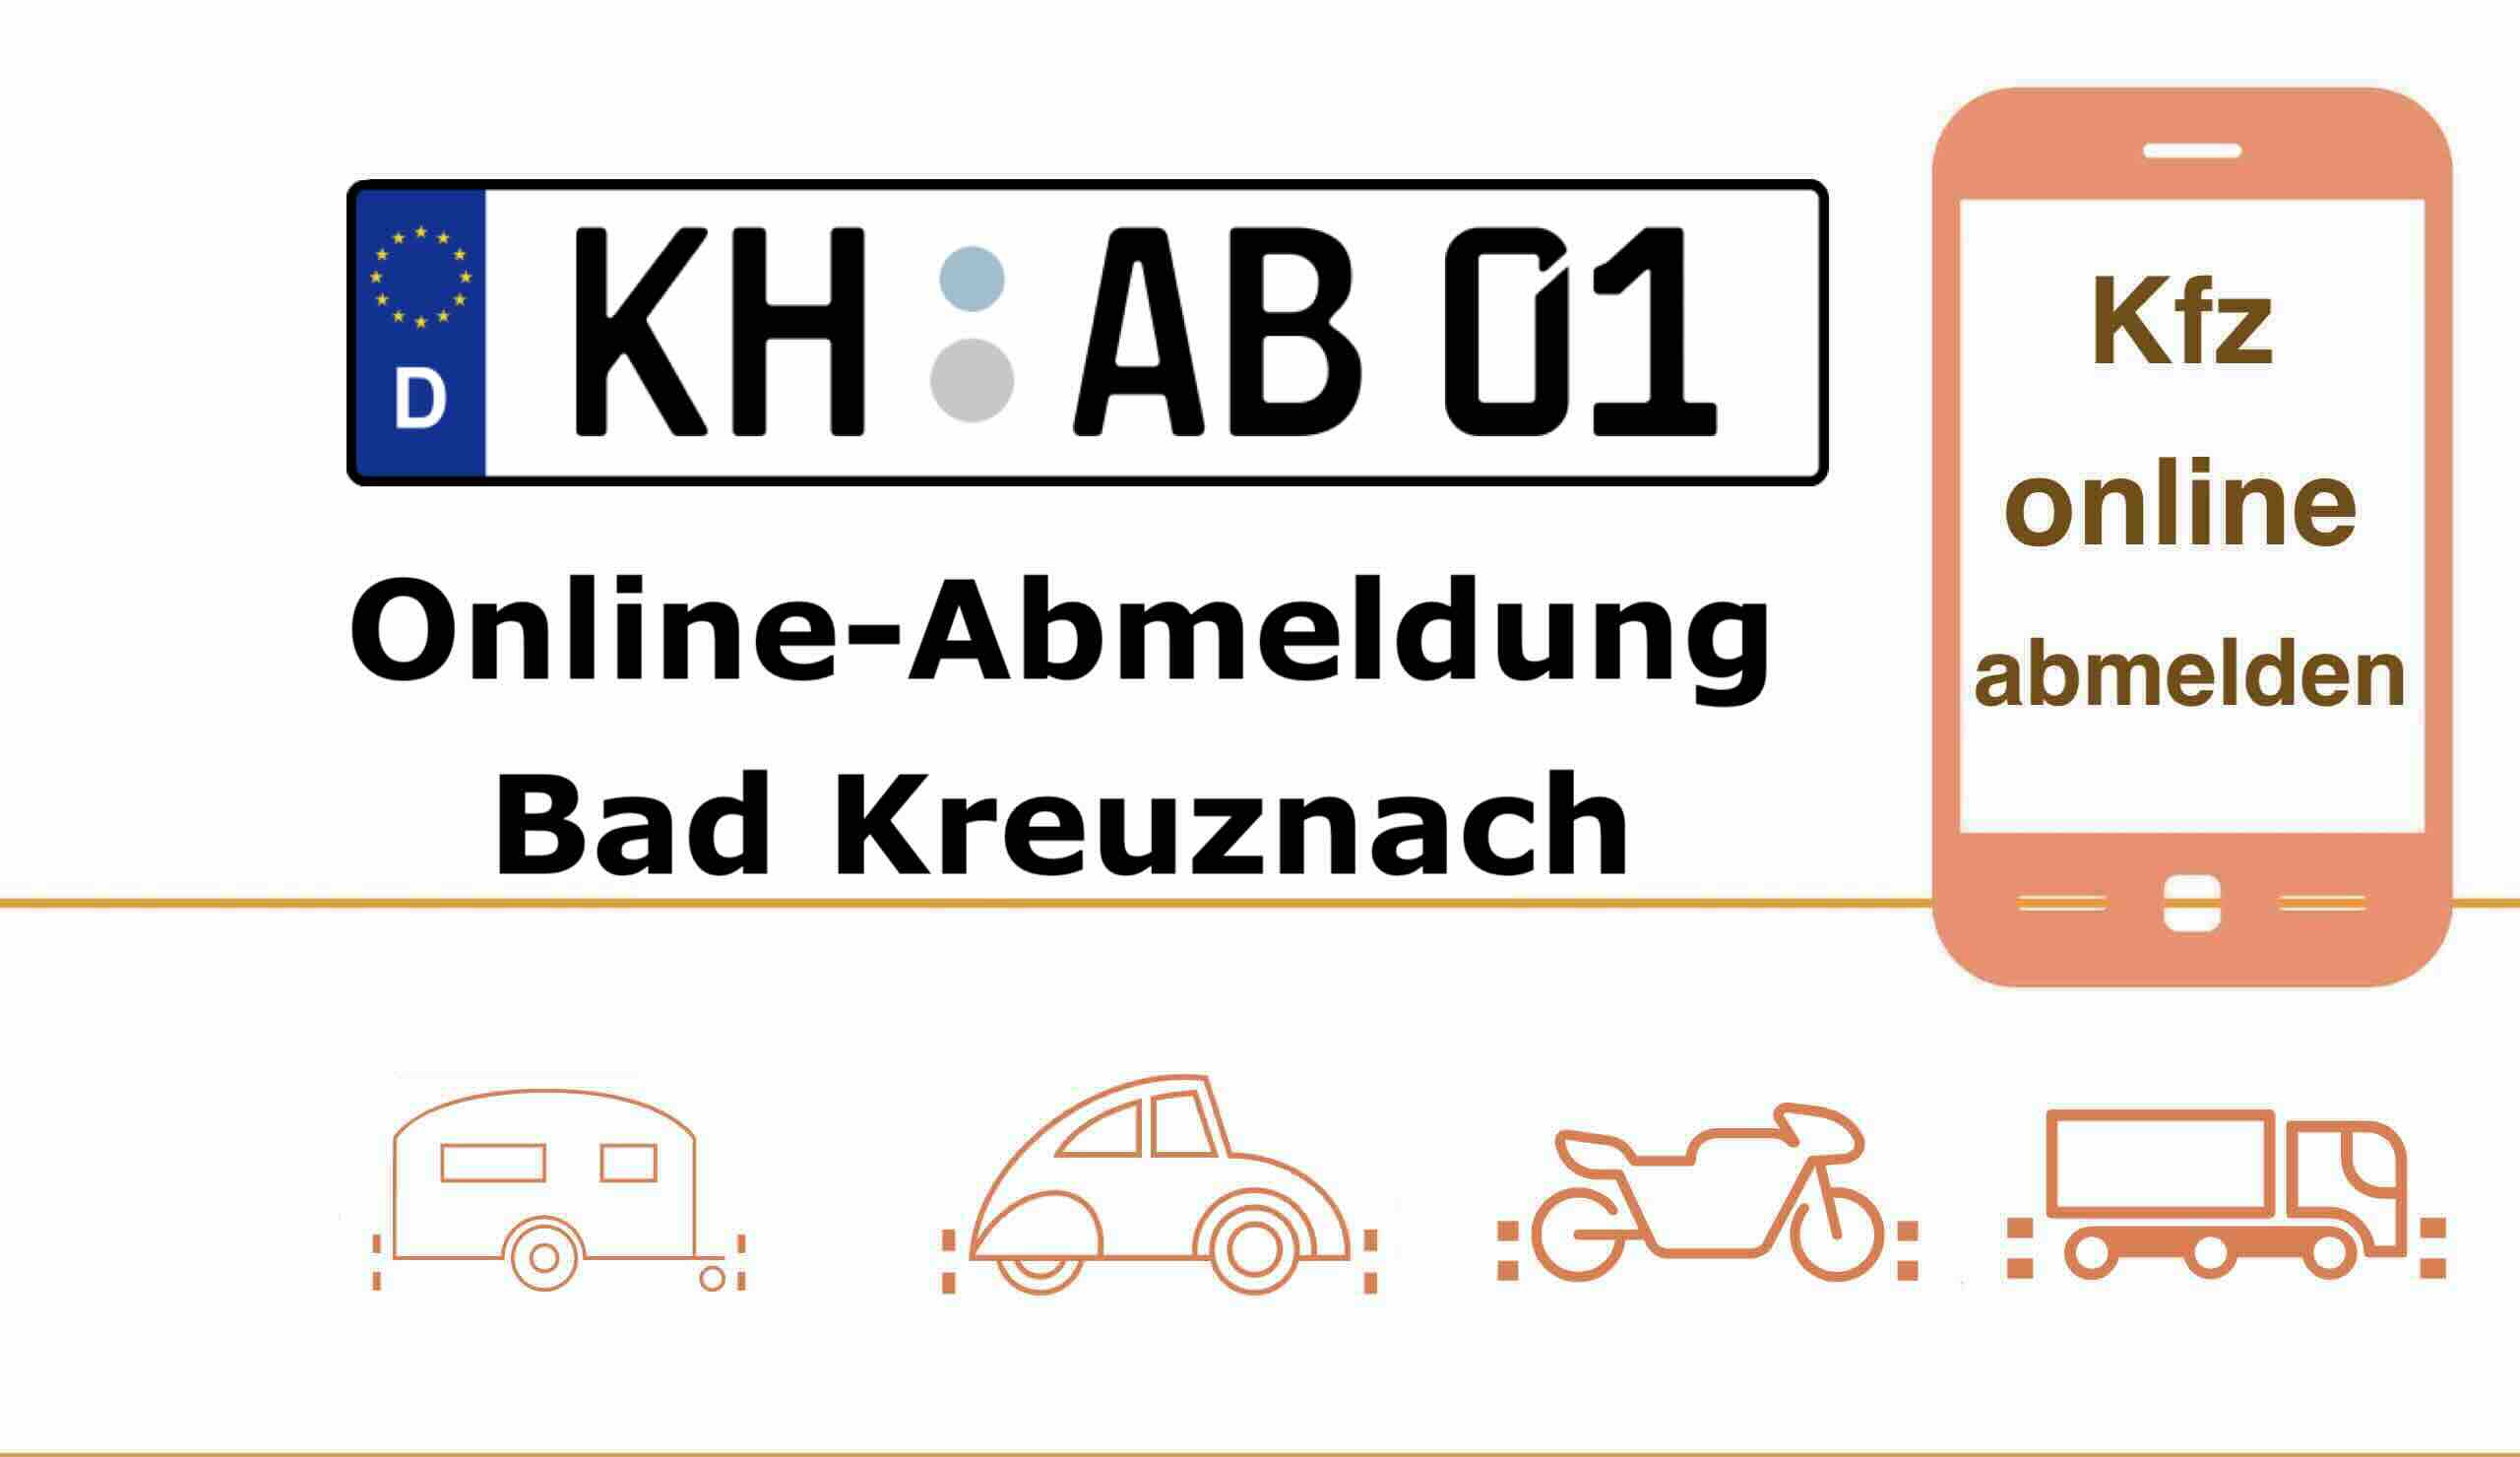 Online-Abmeldung in Bad Kreuznach 